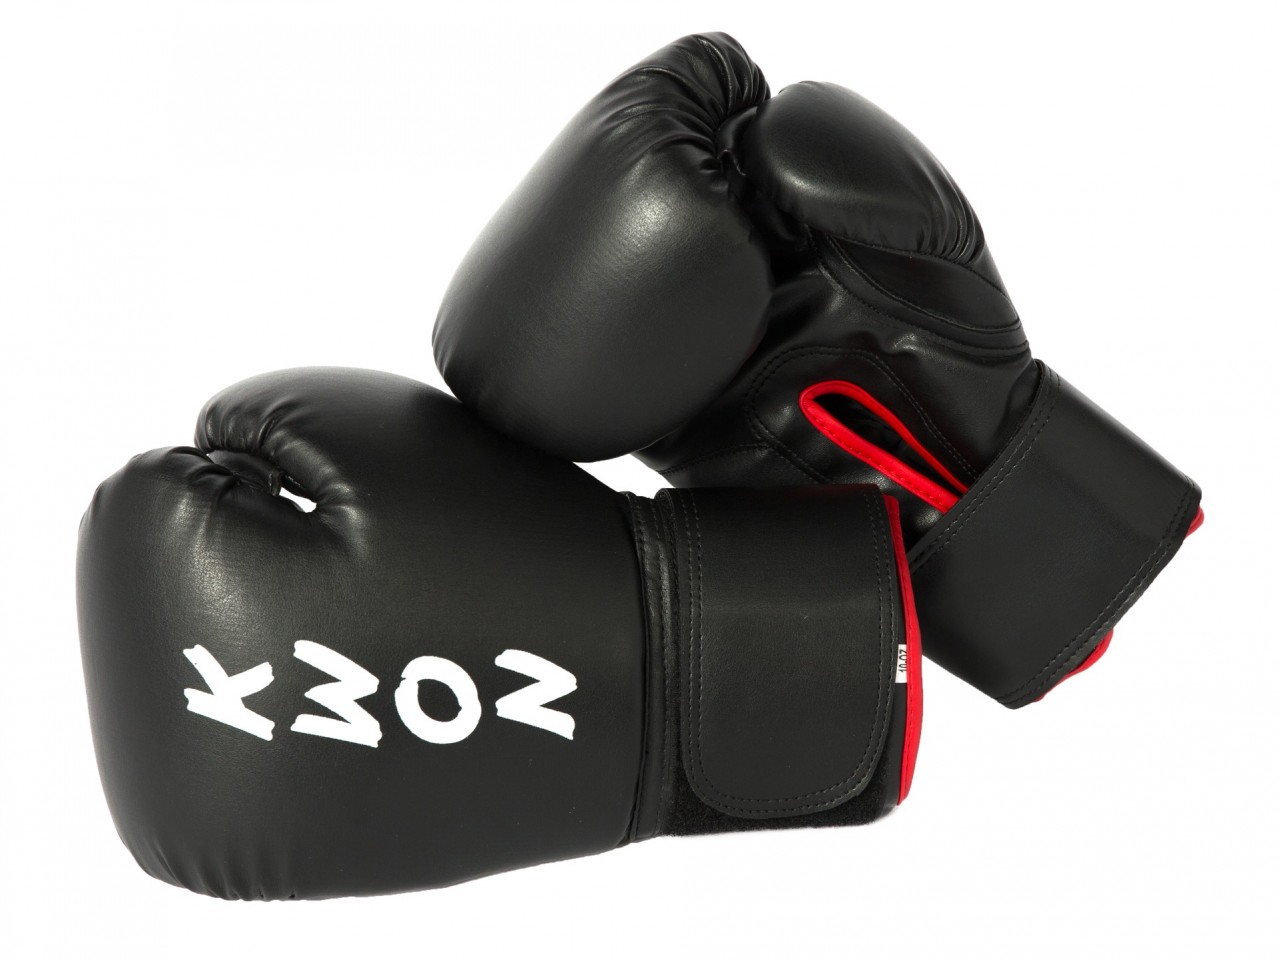 Handschuhe für | Kickboxen Anfänger Boxen Boxhandschuhe und KWON Training